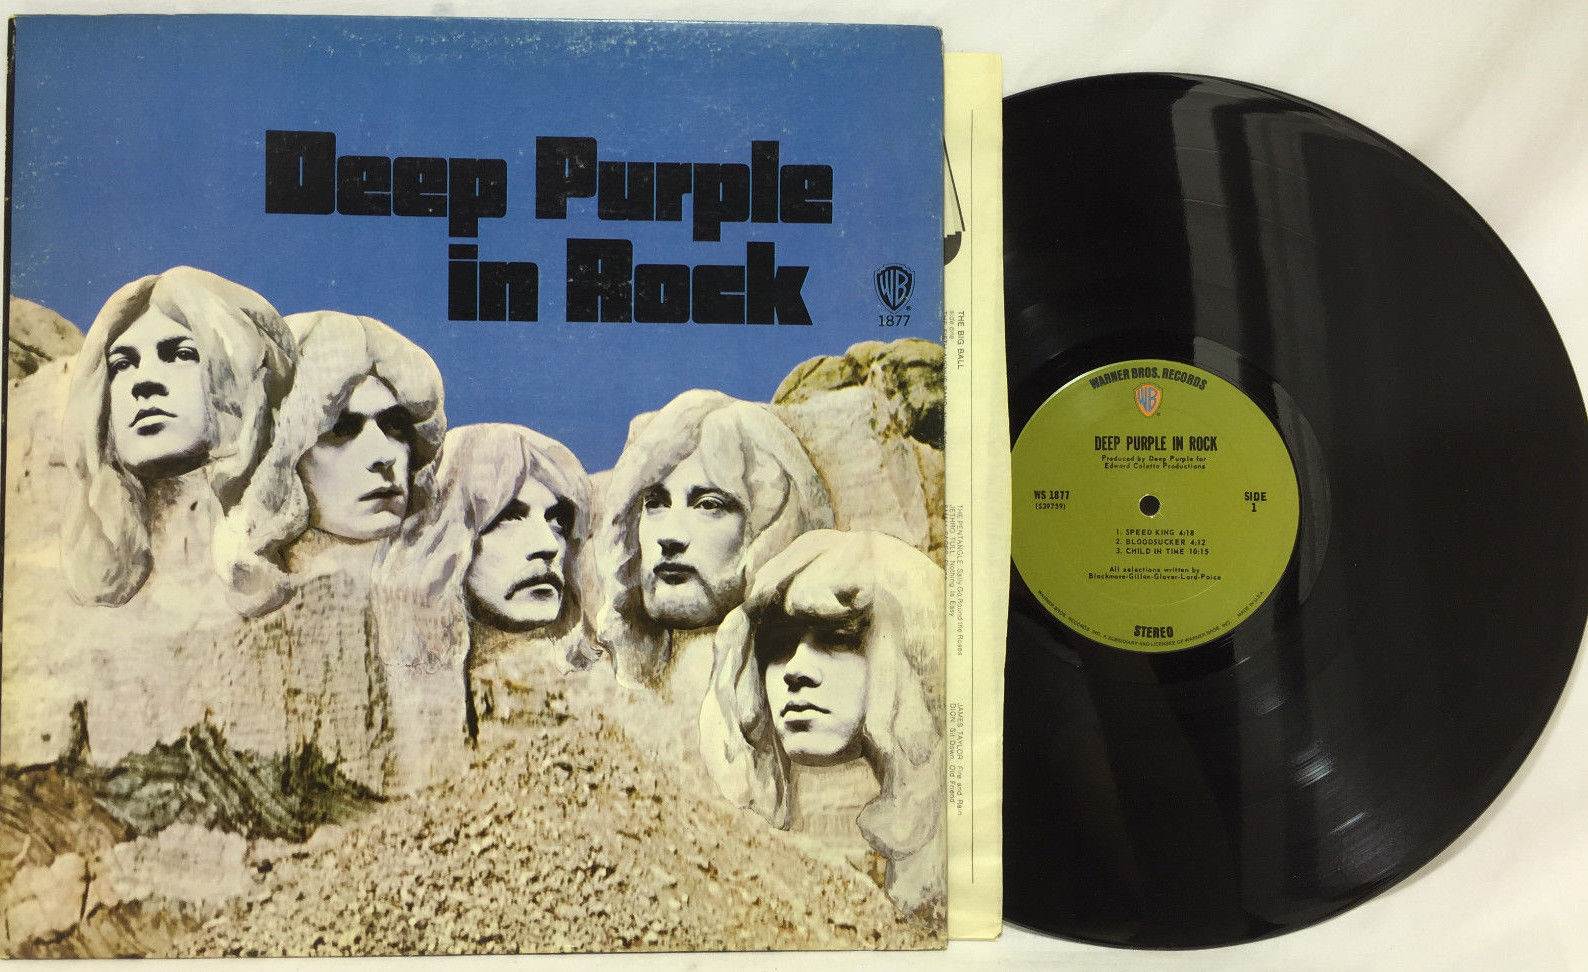 Купить дип перпл. Deep Purple in Rock 1970 LP. Deep Purple in Rock 1970 обложка. Deep Purple Deep Purple in Rock 1970. Deep Purple in Rock Deep Purple обложка.